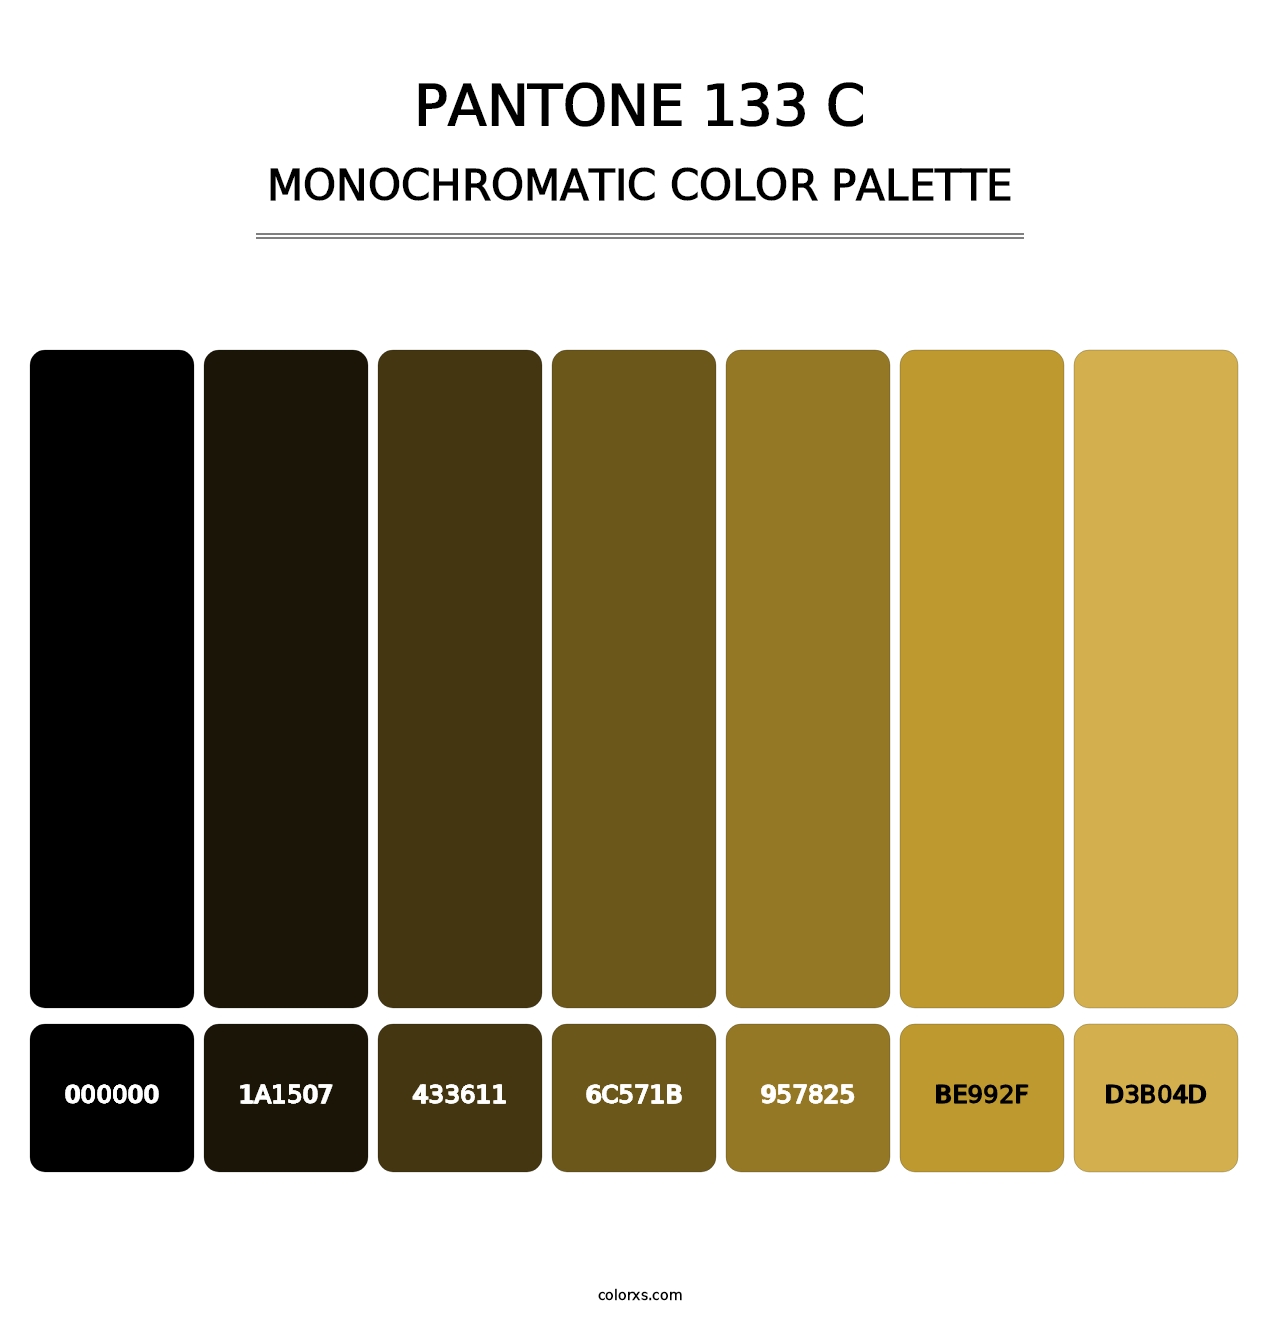 PANTONE 133 C - Monochromatic Color Palette